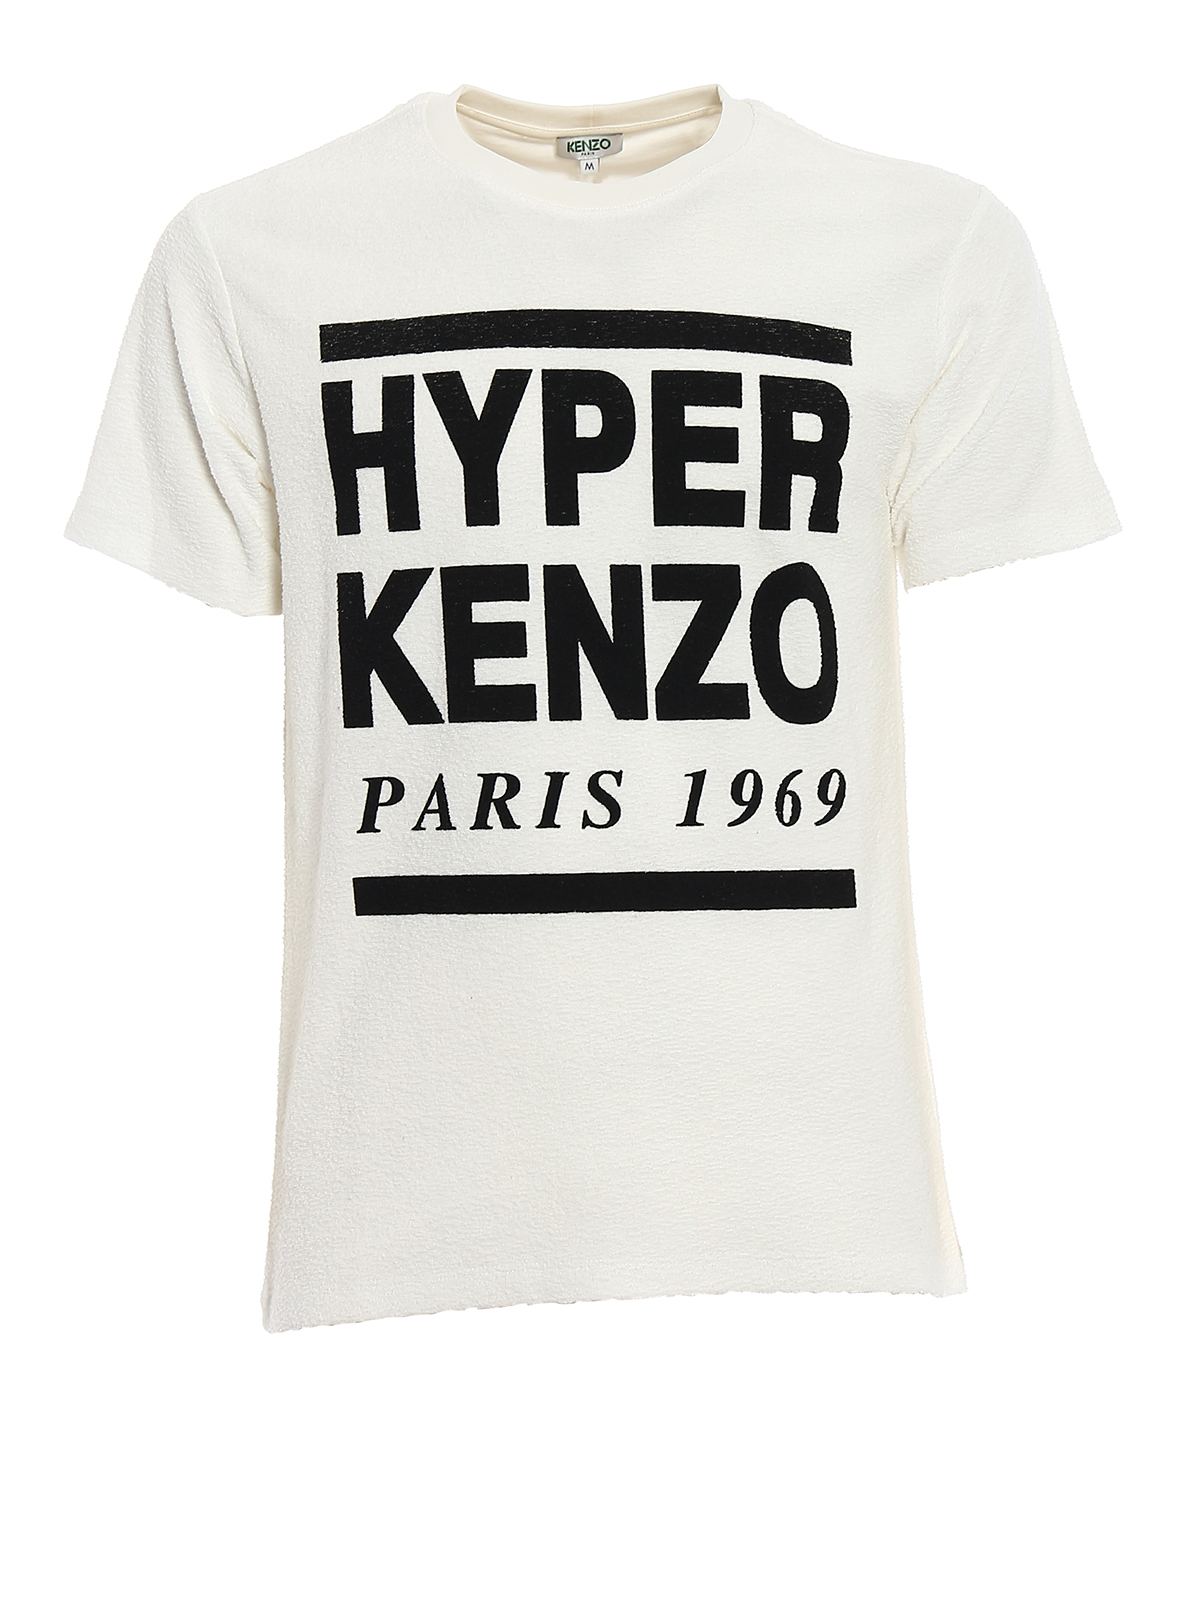 Kenzo - Tシャツ - Hyper Kenzo - Tシャツ 